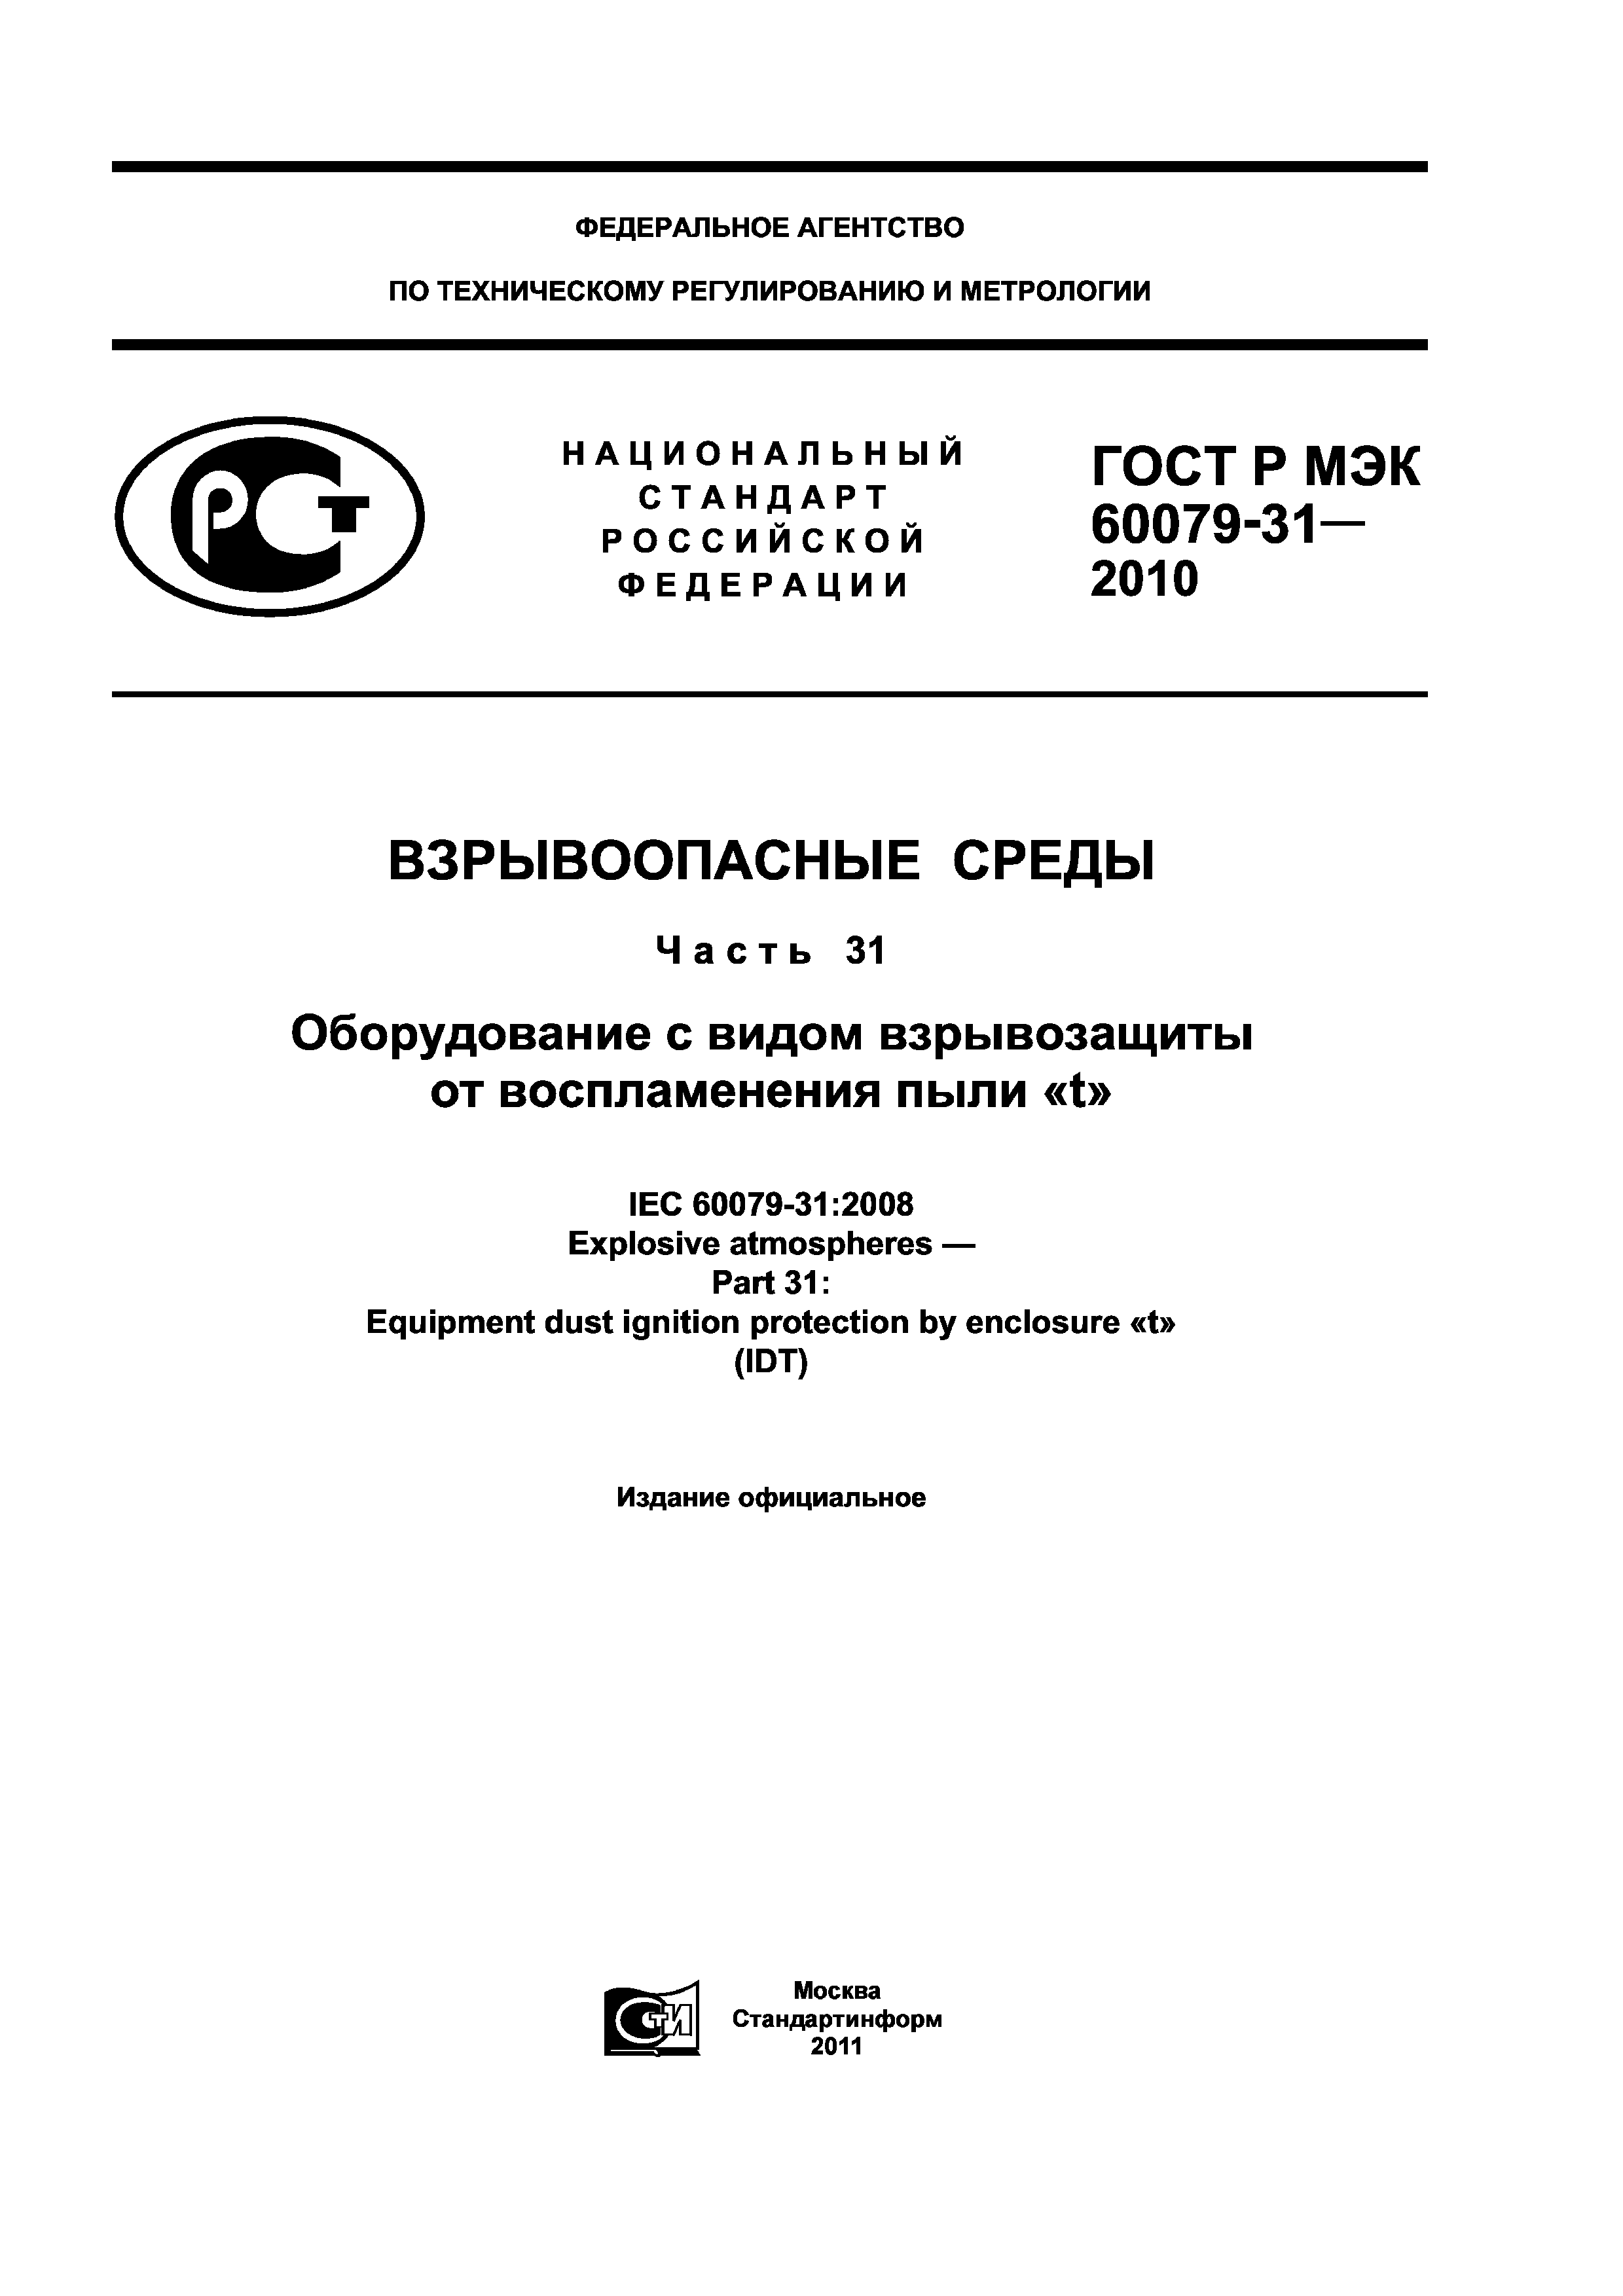 ГОСТ Р МЭК 60079-31-2010